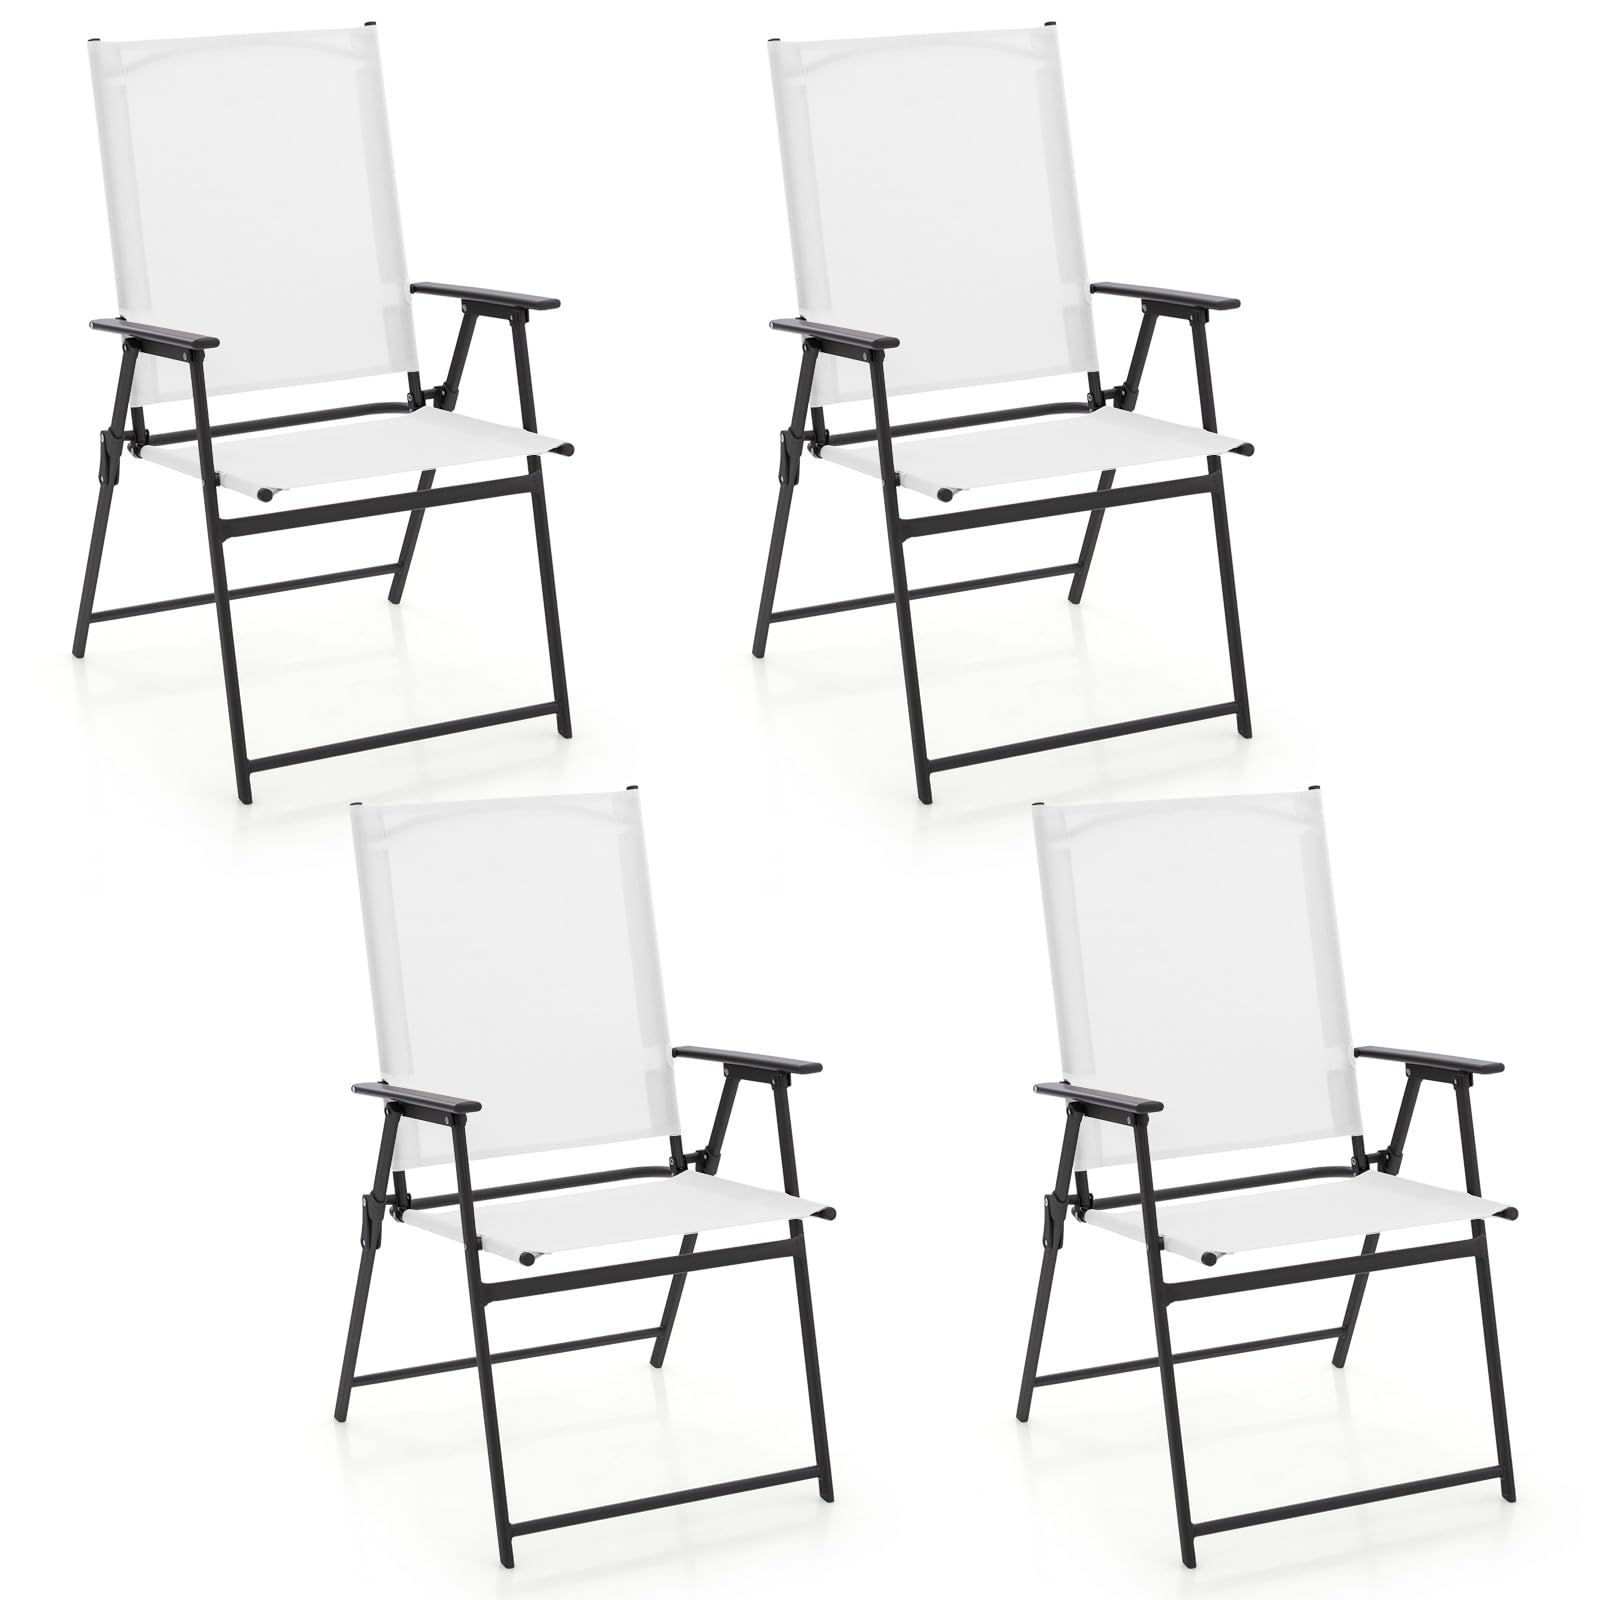 Giantex Patio Folding Chairs Set